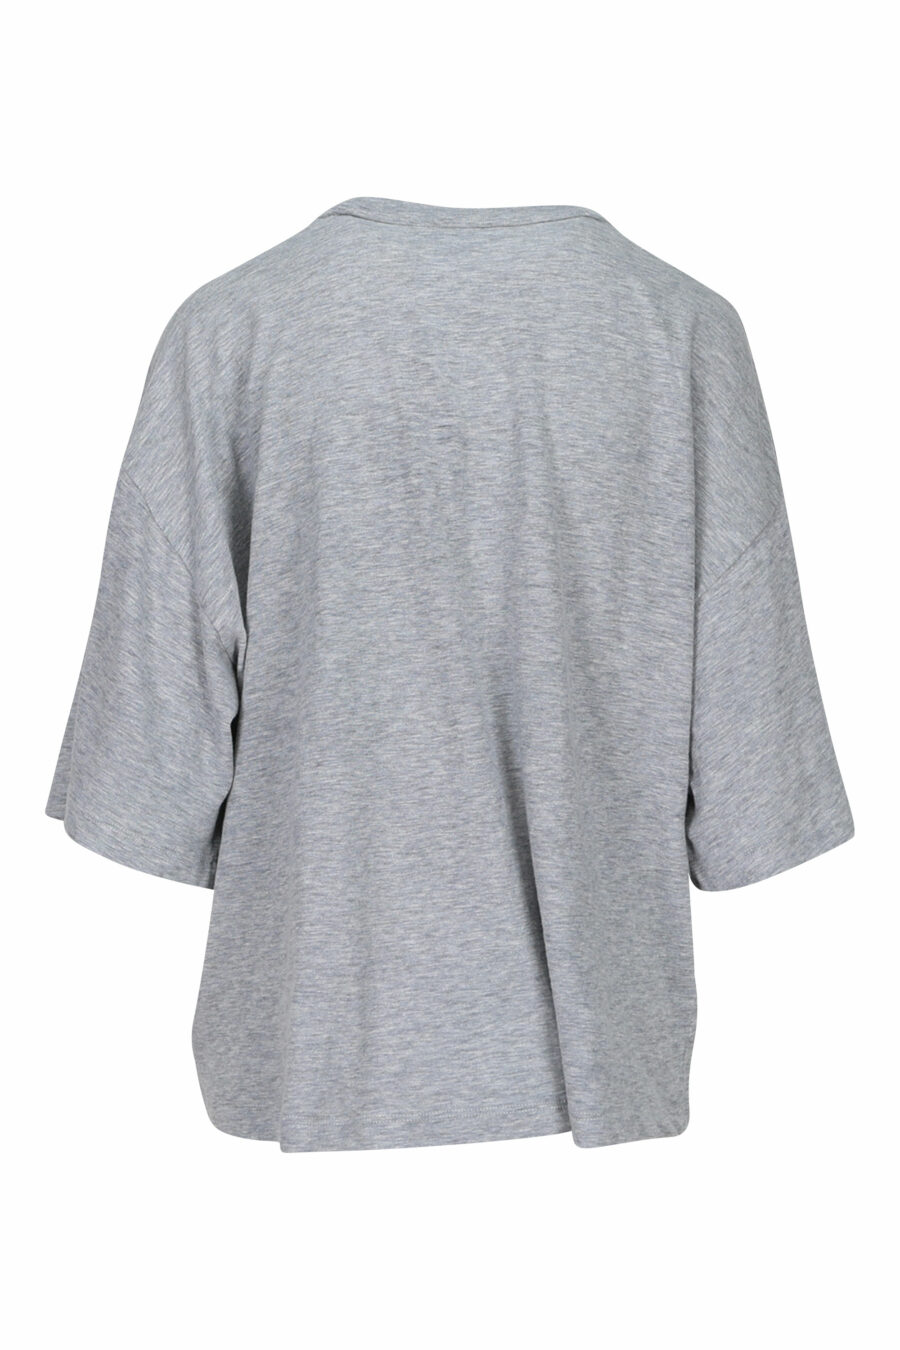 Oversize grey T-shirt with pink maxilogue - 8054148109882 1